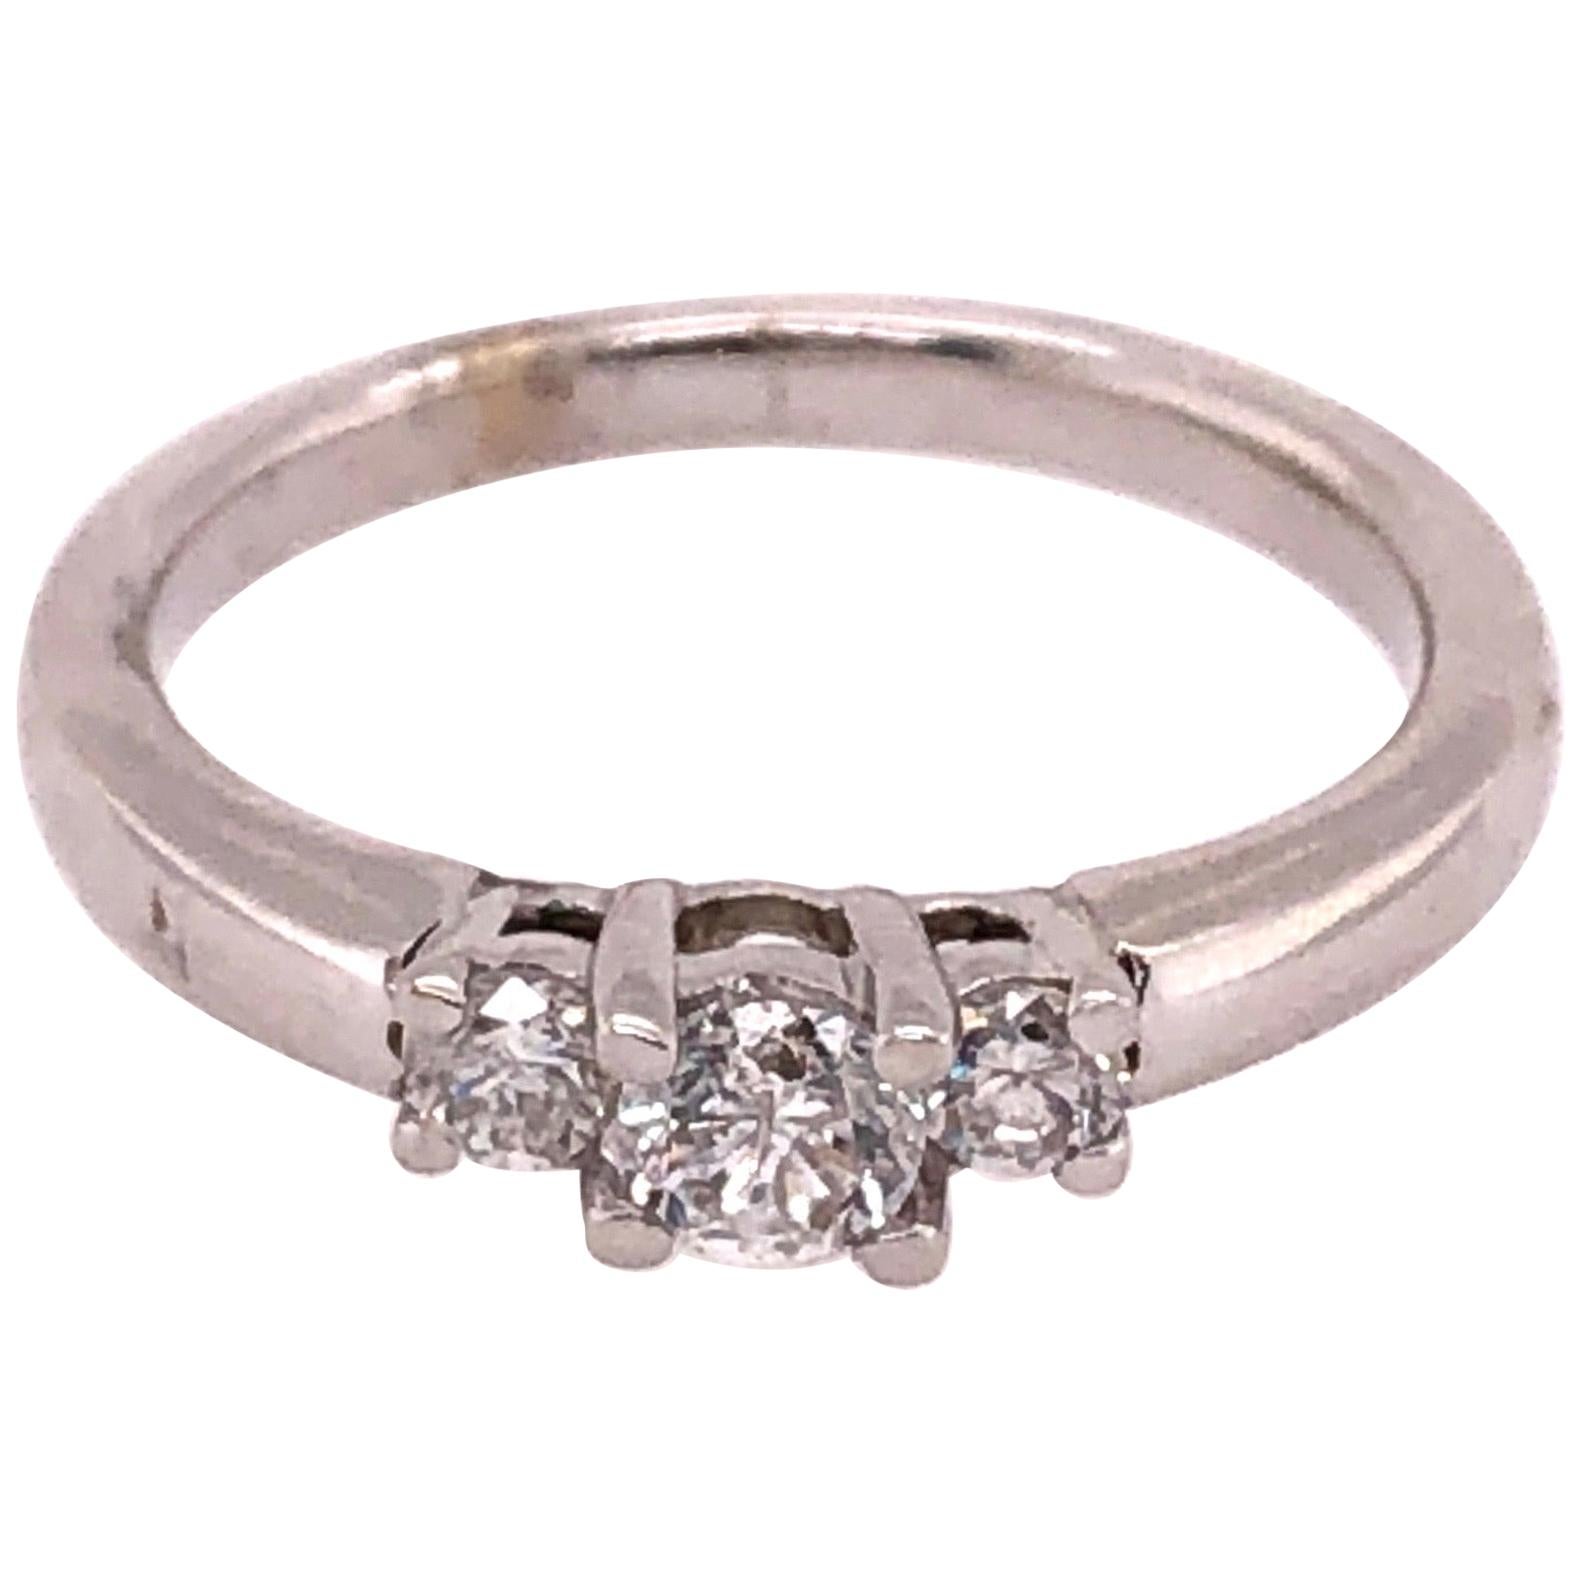 14 Karat White Gold Engagement Ring / Band 0.50 Total Diamond Weight